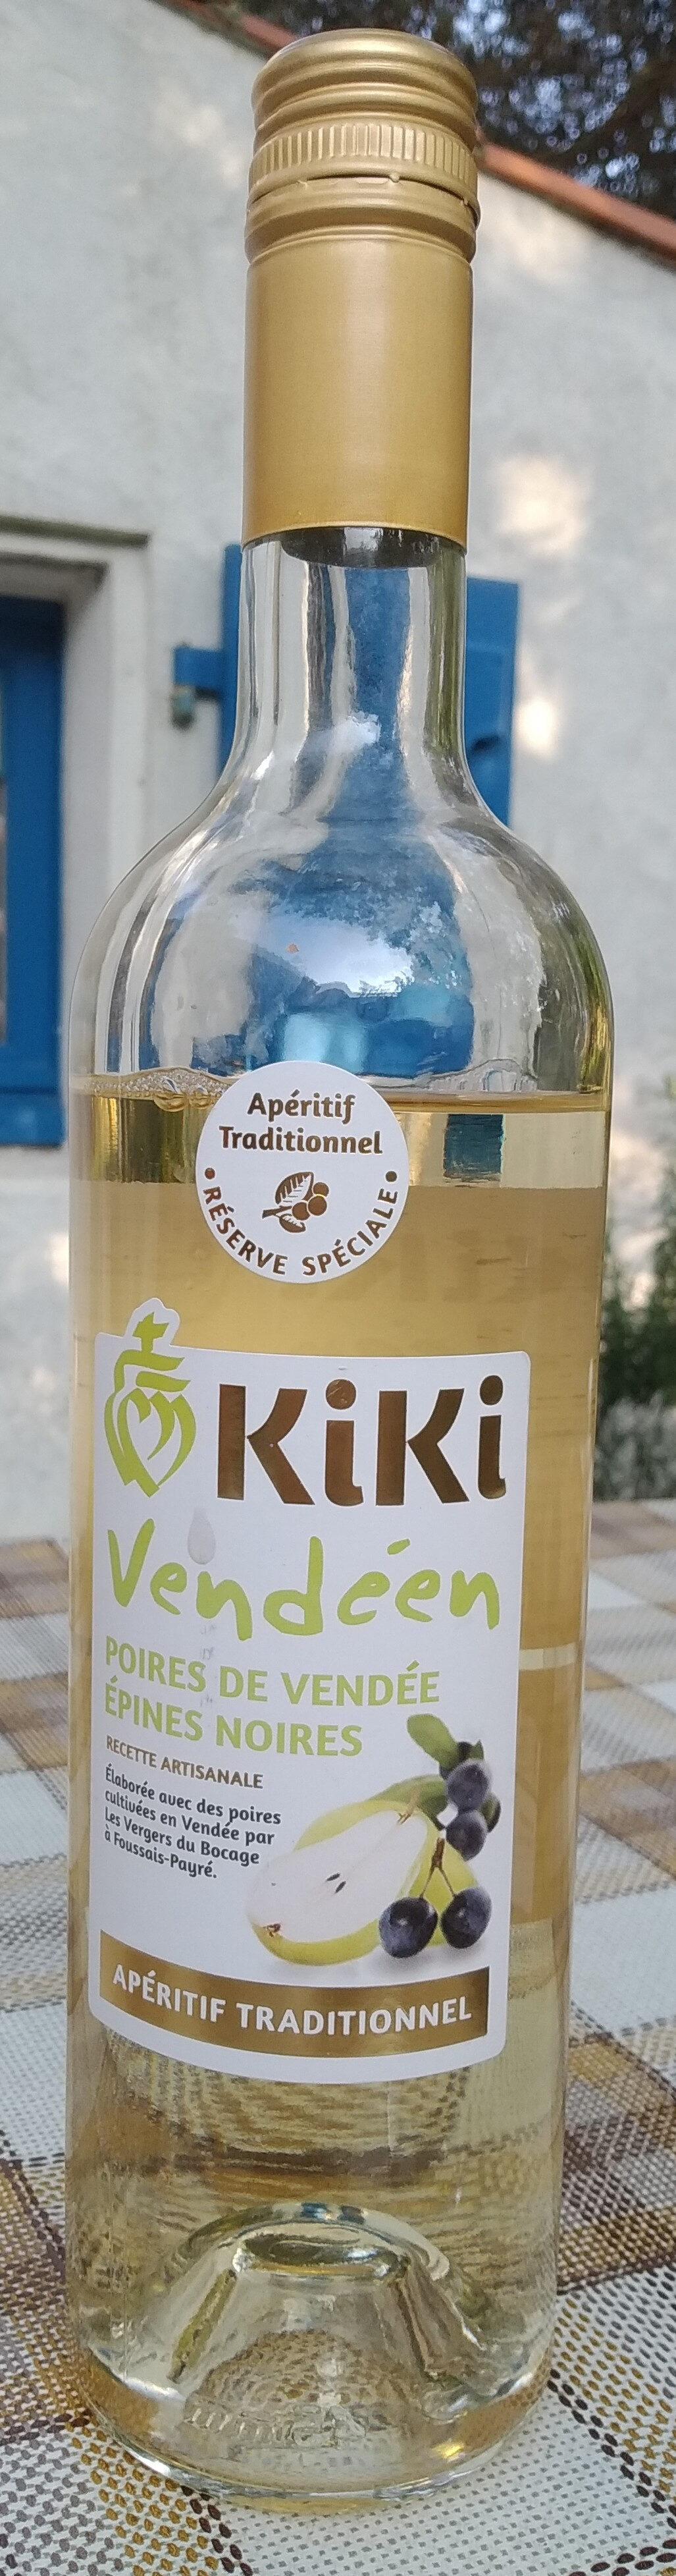 Kiki vendéen - poires de Vendée - Produit